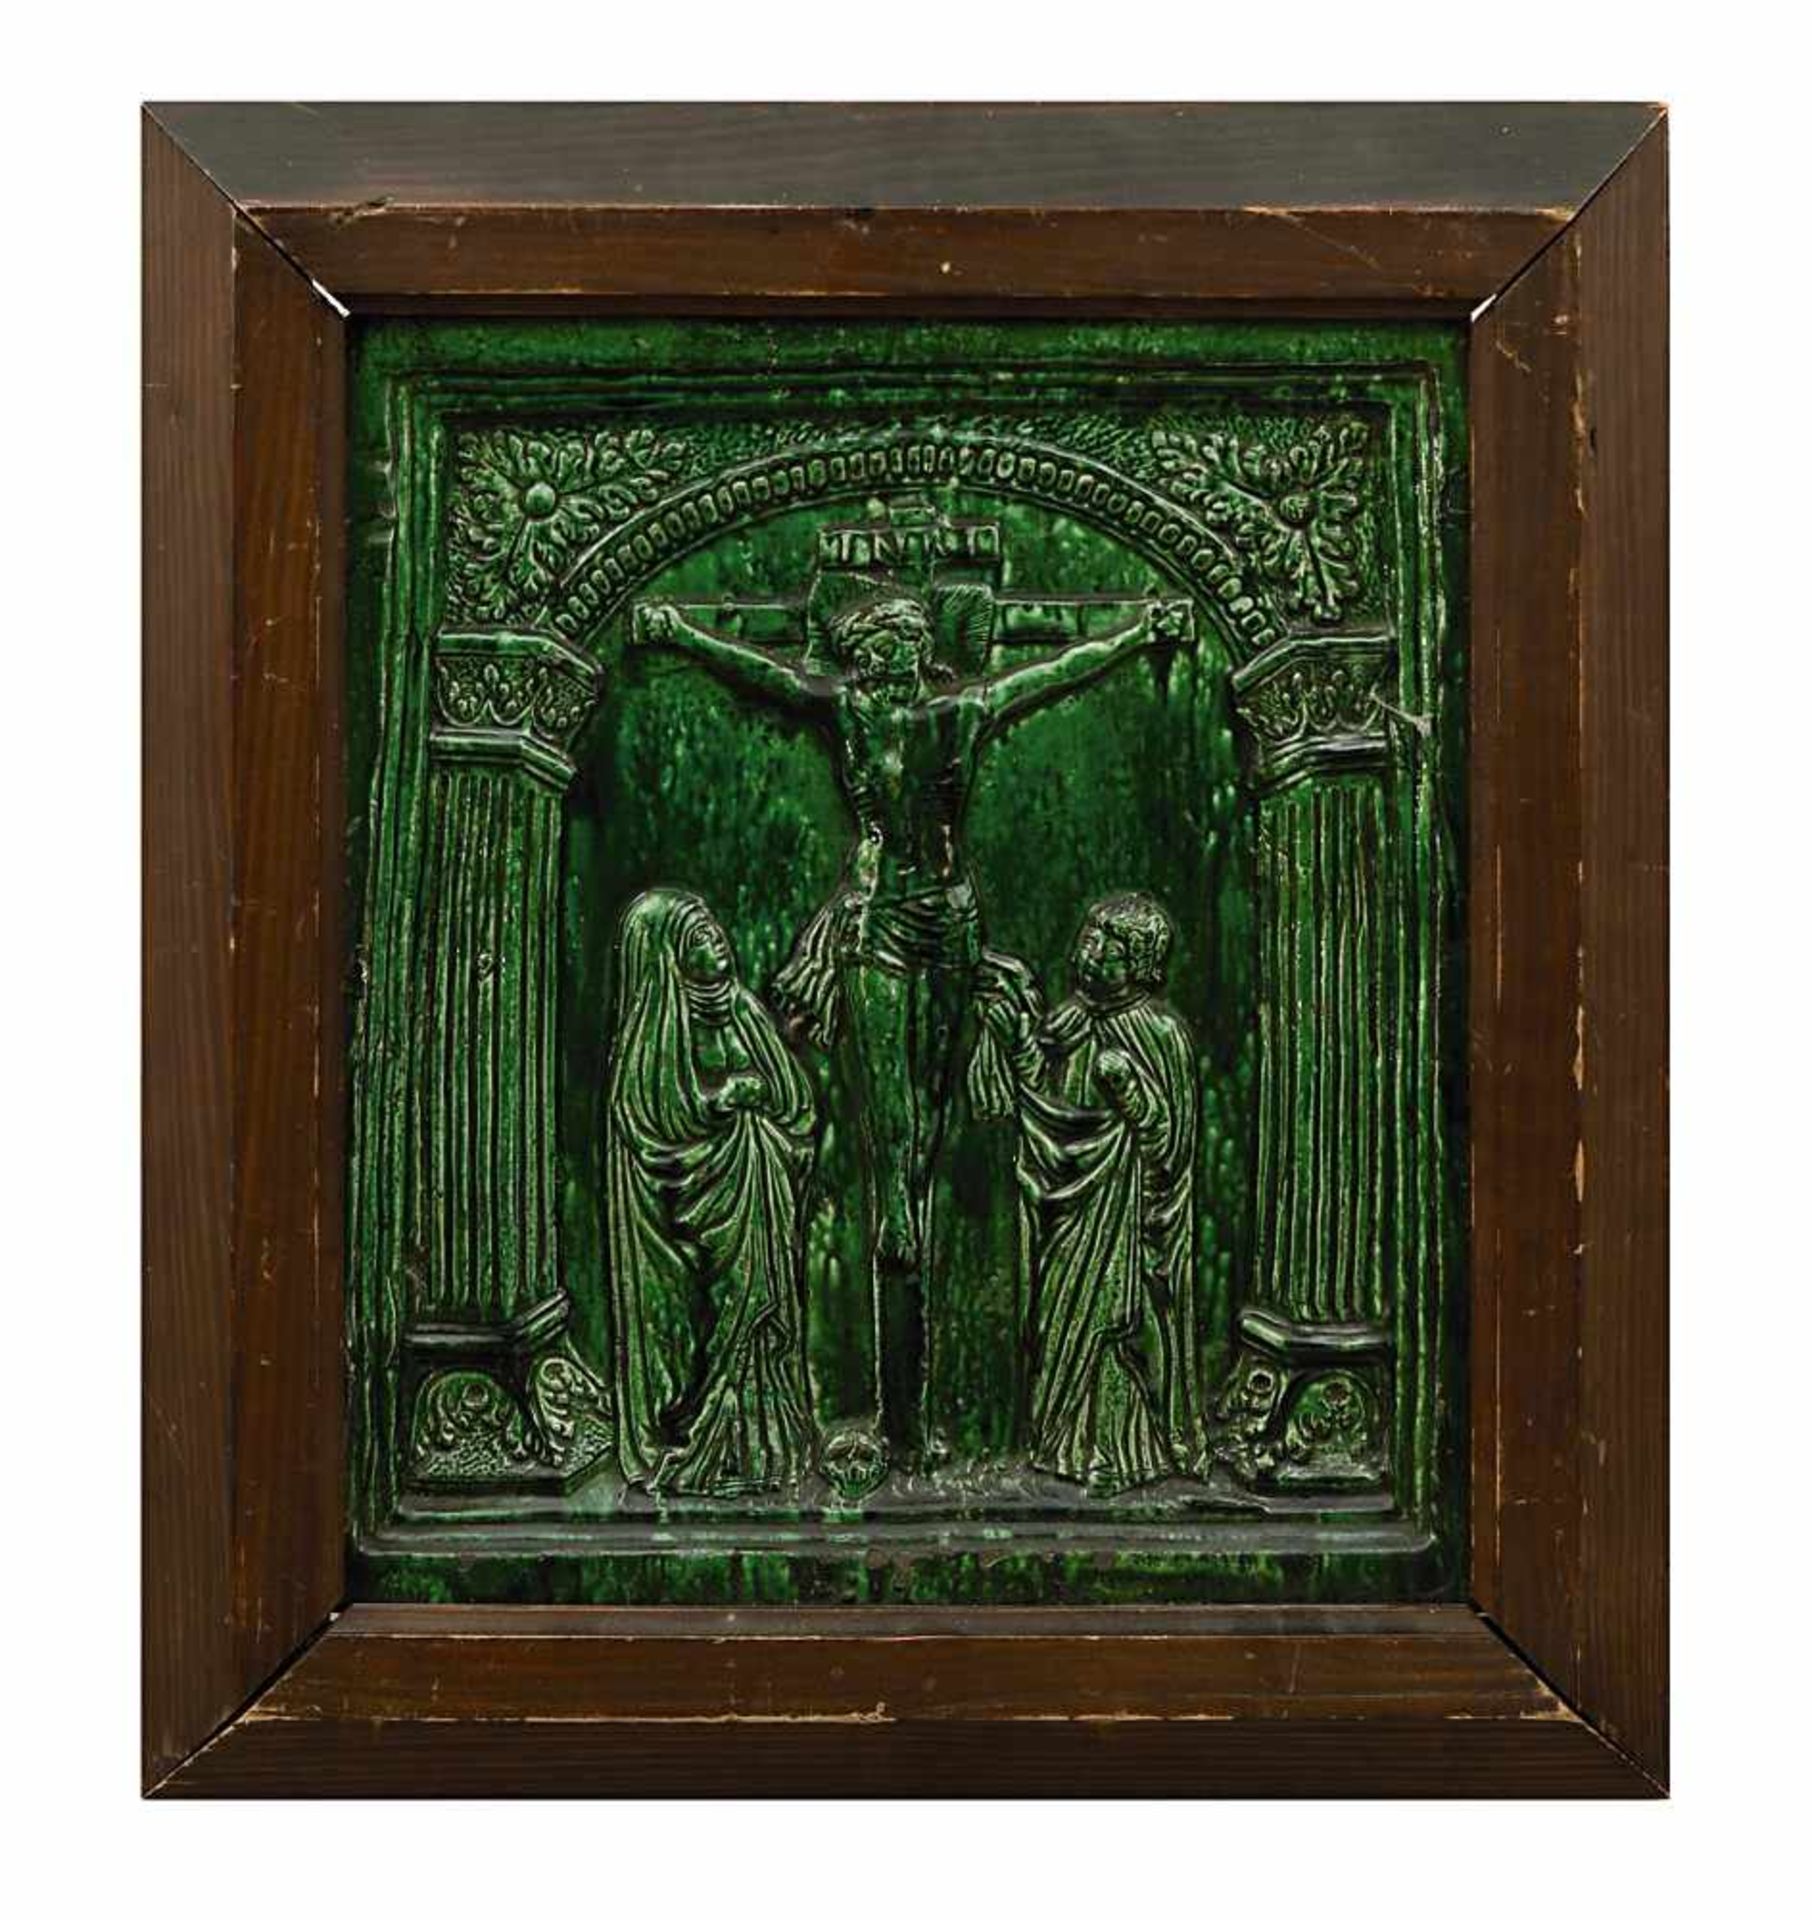 Ofenkachel 17. Jh. (?) Hafnerkeramik, grün glasiert. Reliefierte Darstellung von Christus am Kreuz